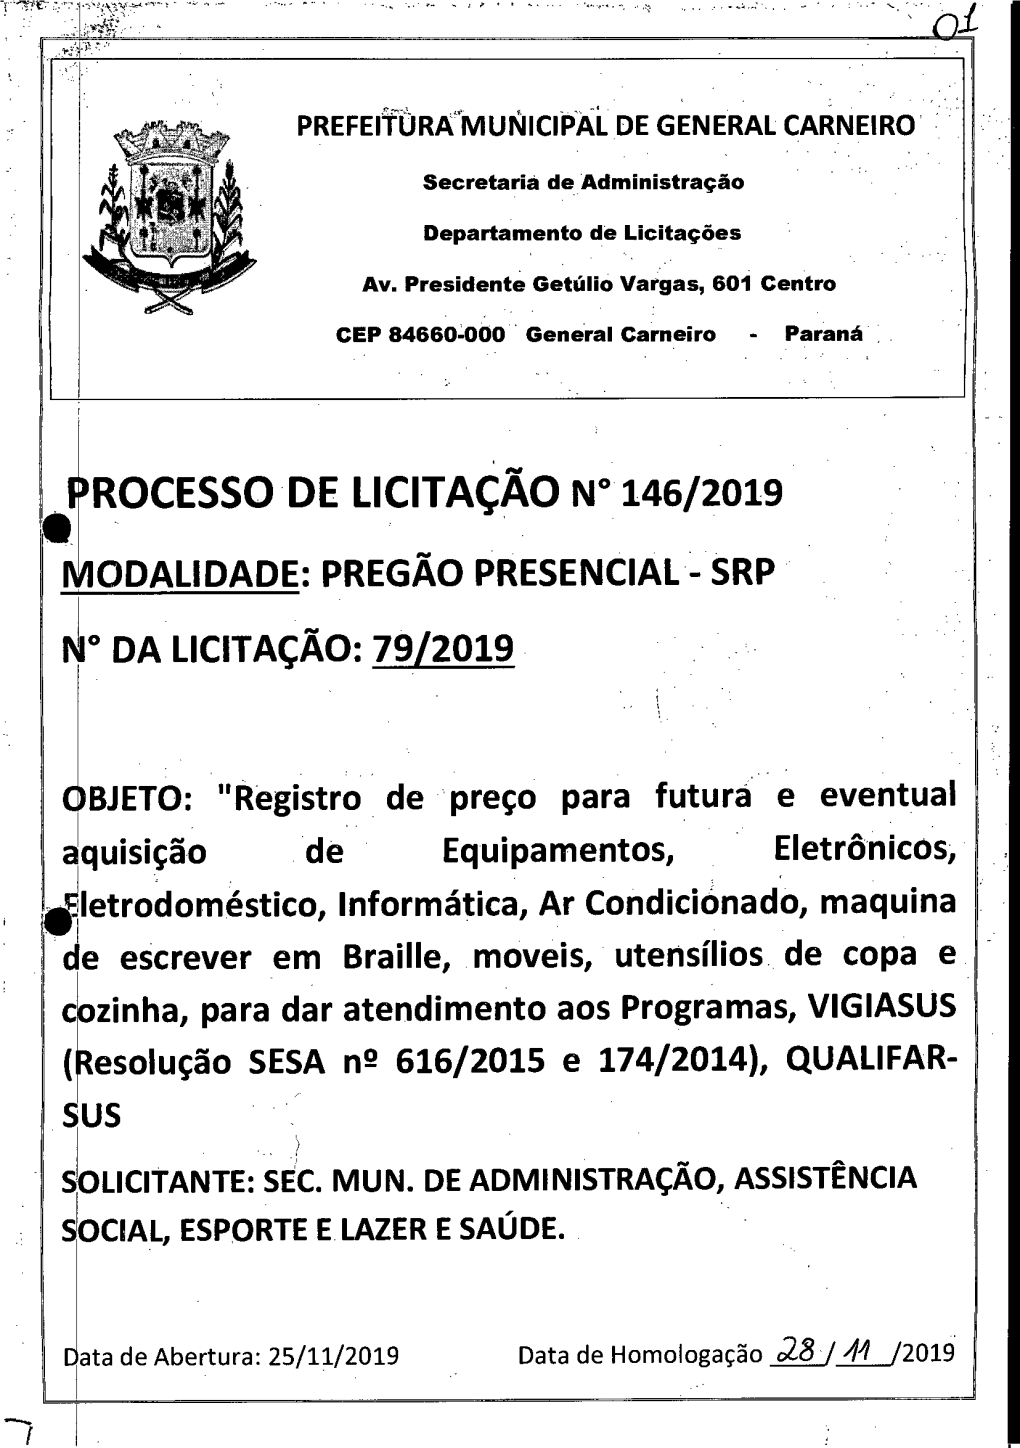 Ill ROCESSO DE LICITAÇÃO N° 146/2019